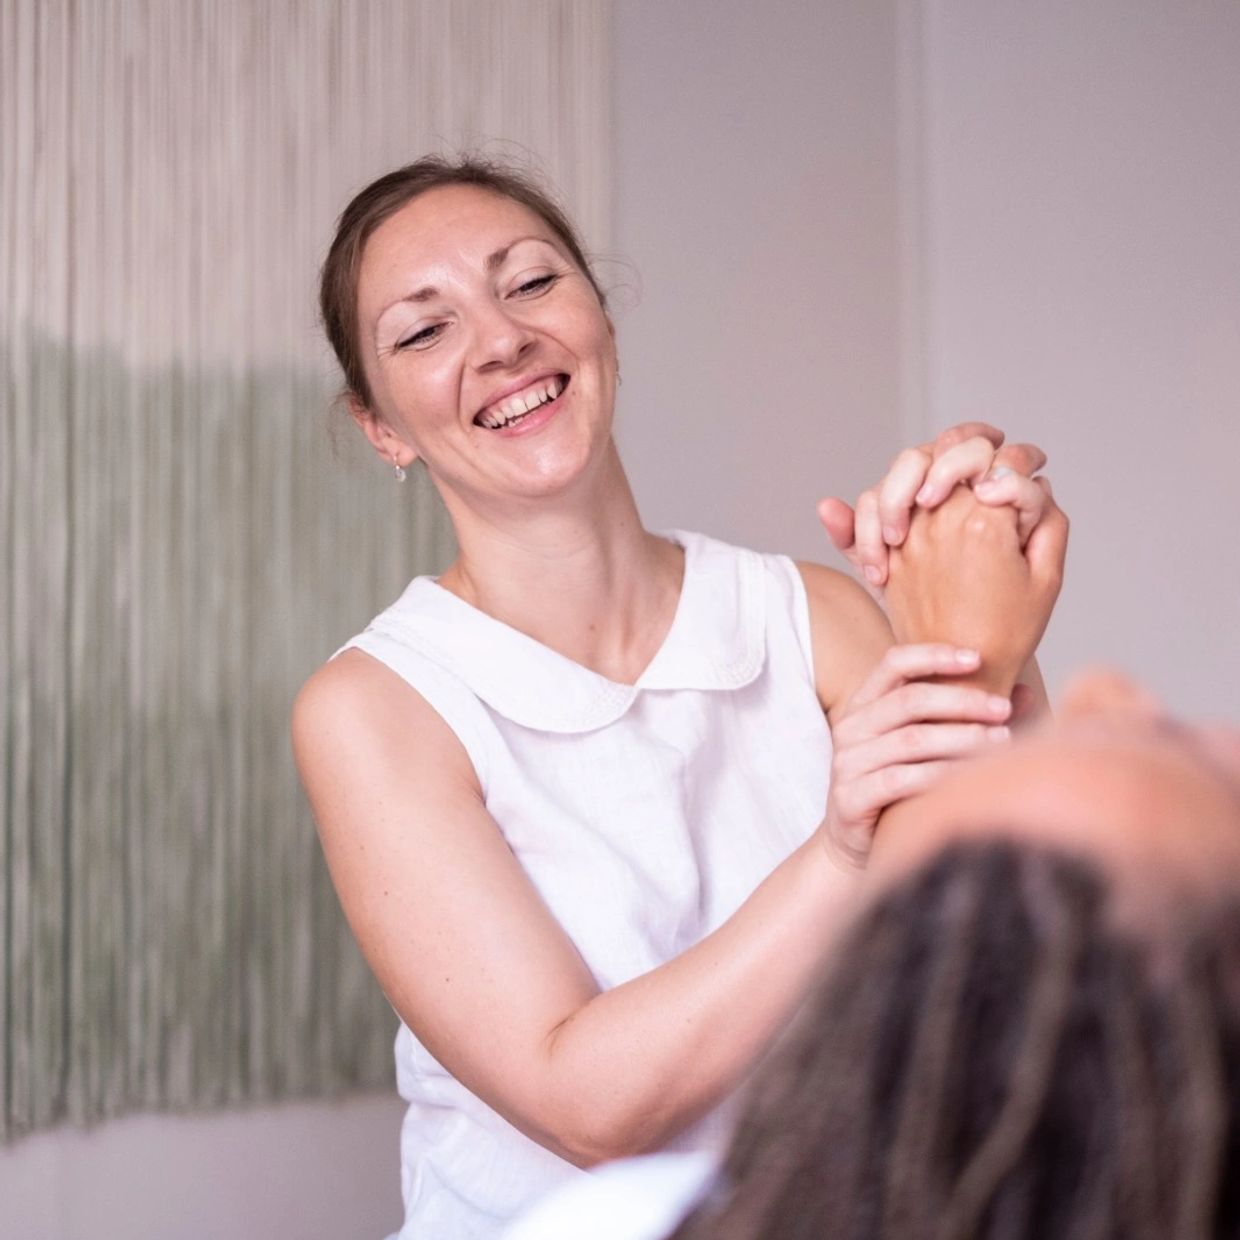 Massage Lagos
Massage Algarve
Pregnancy massage
Deep tissue massage
Prenatal massage
Swedish massage